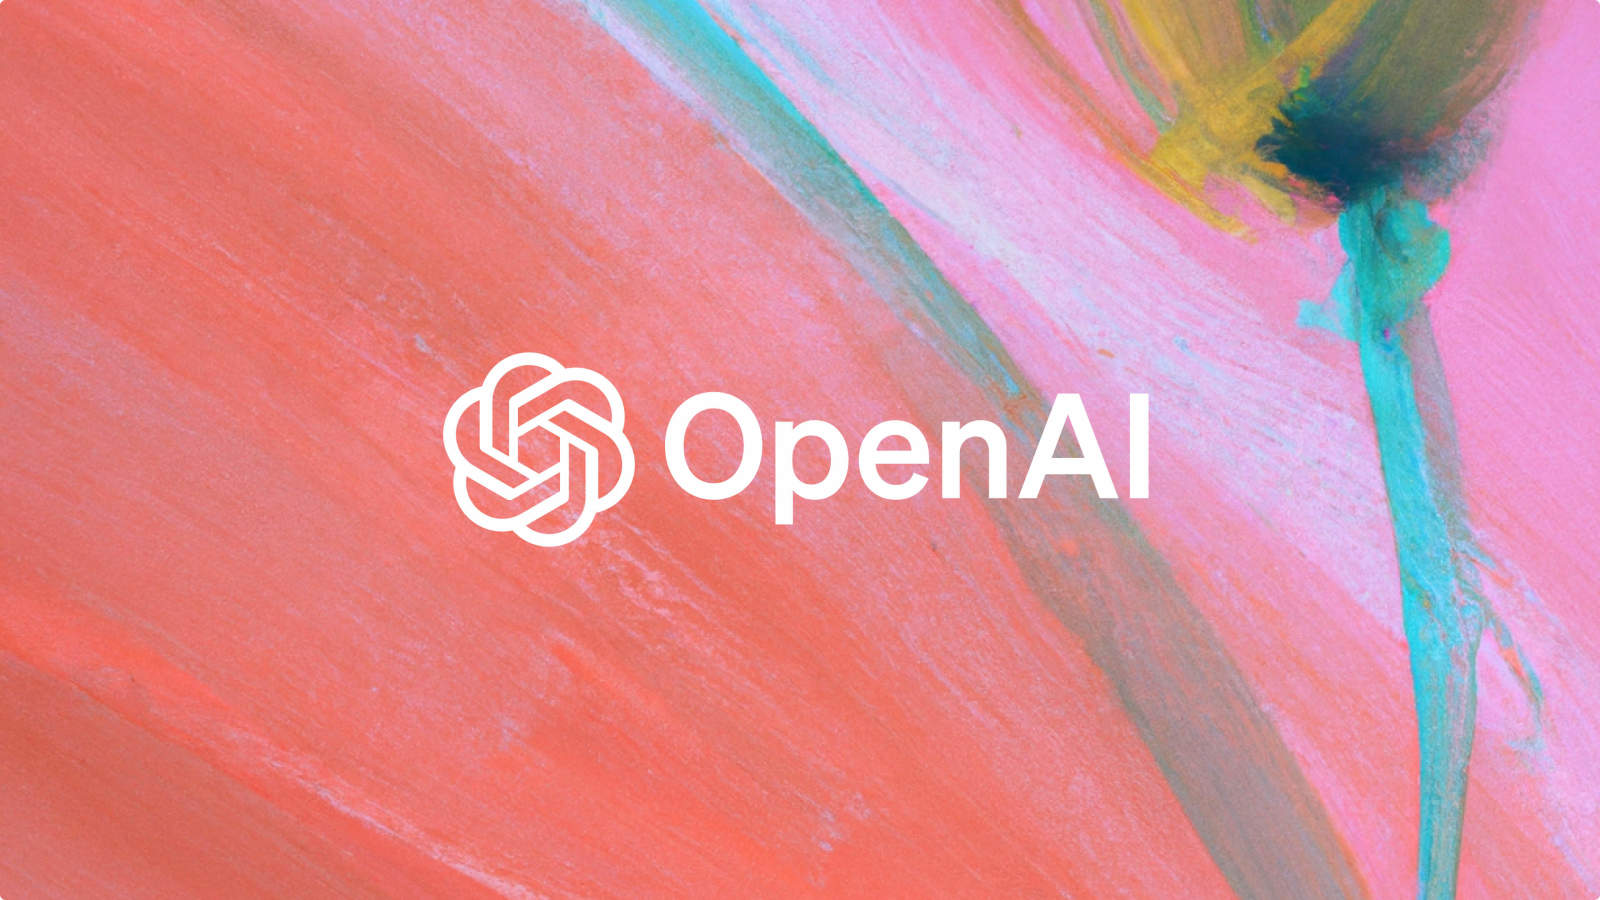 OpenAI a lansat GPT-4o mini, primul model mic de limbaj al companiei